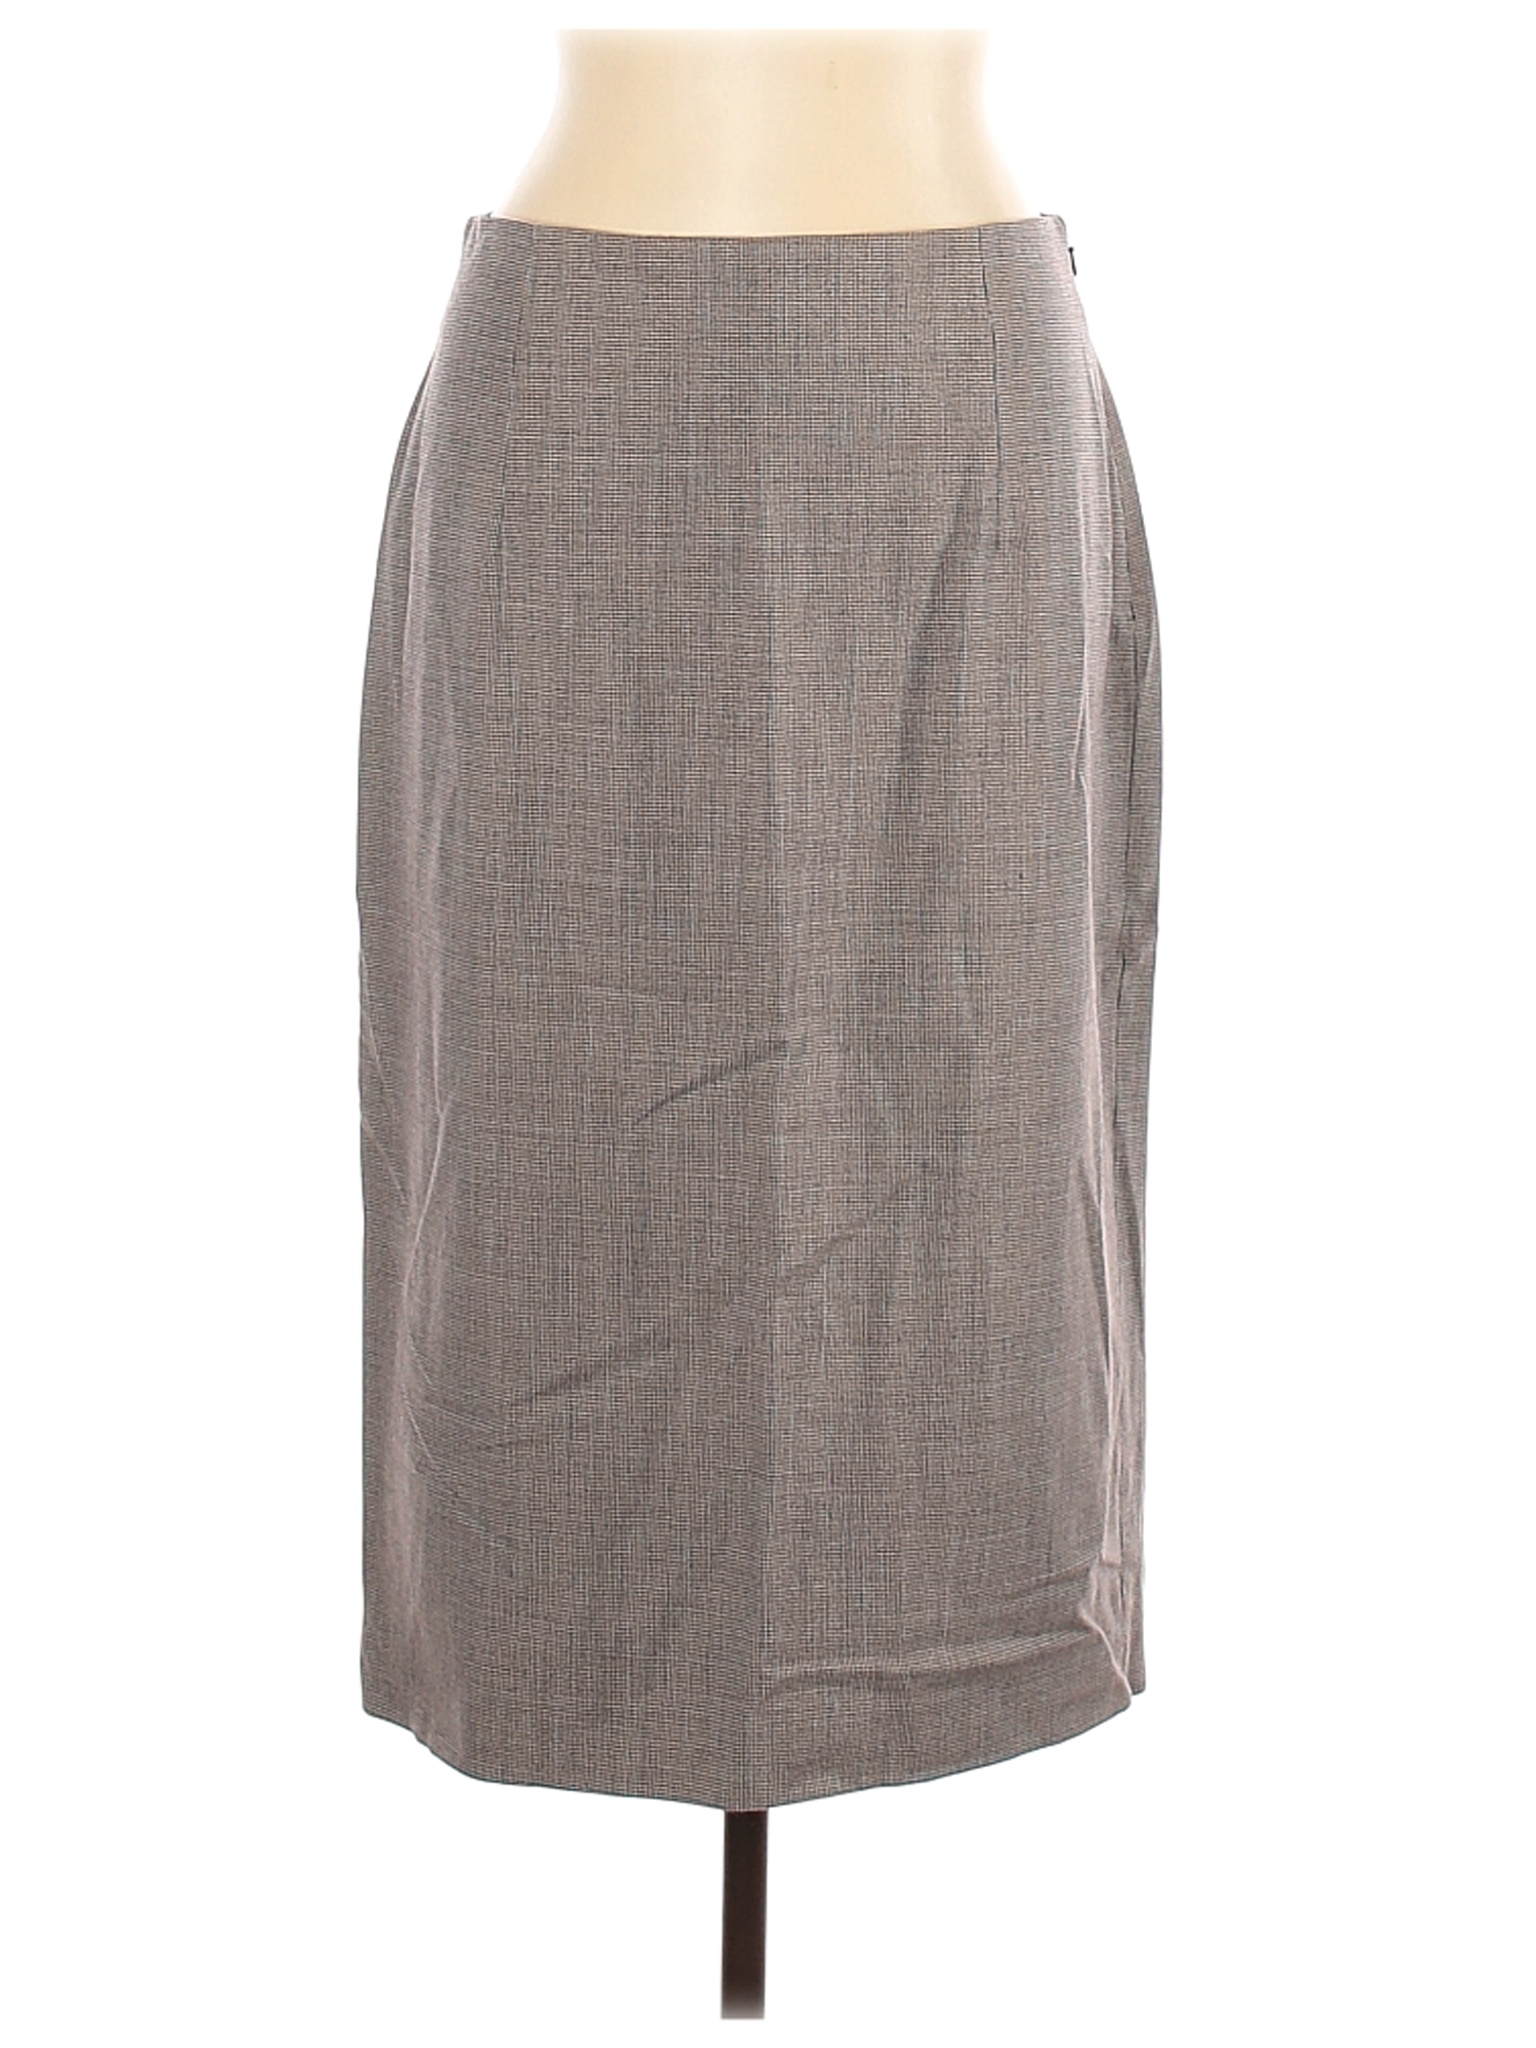 Banana Republic Women Gray Wool Skirt 12 | eBay